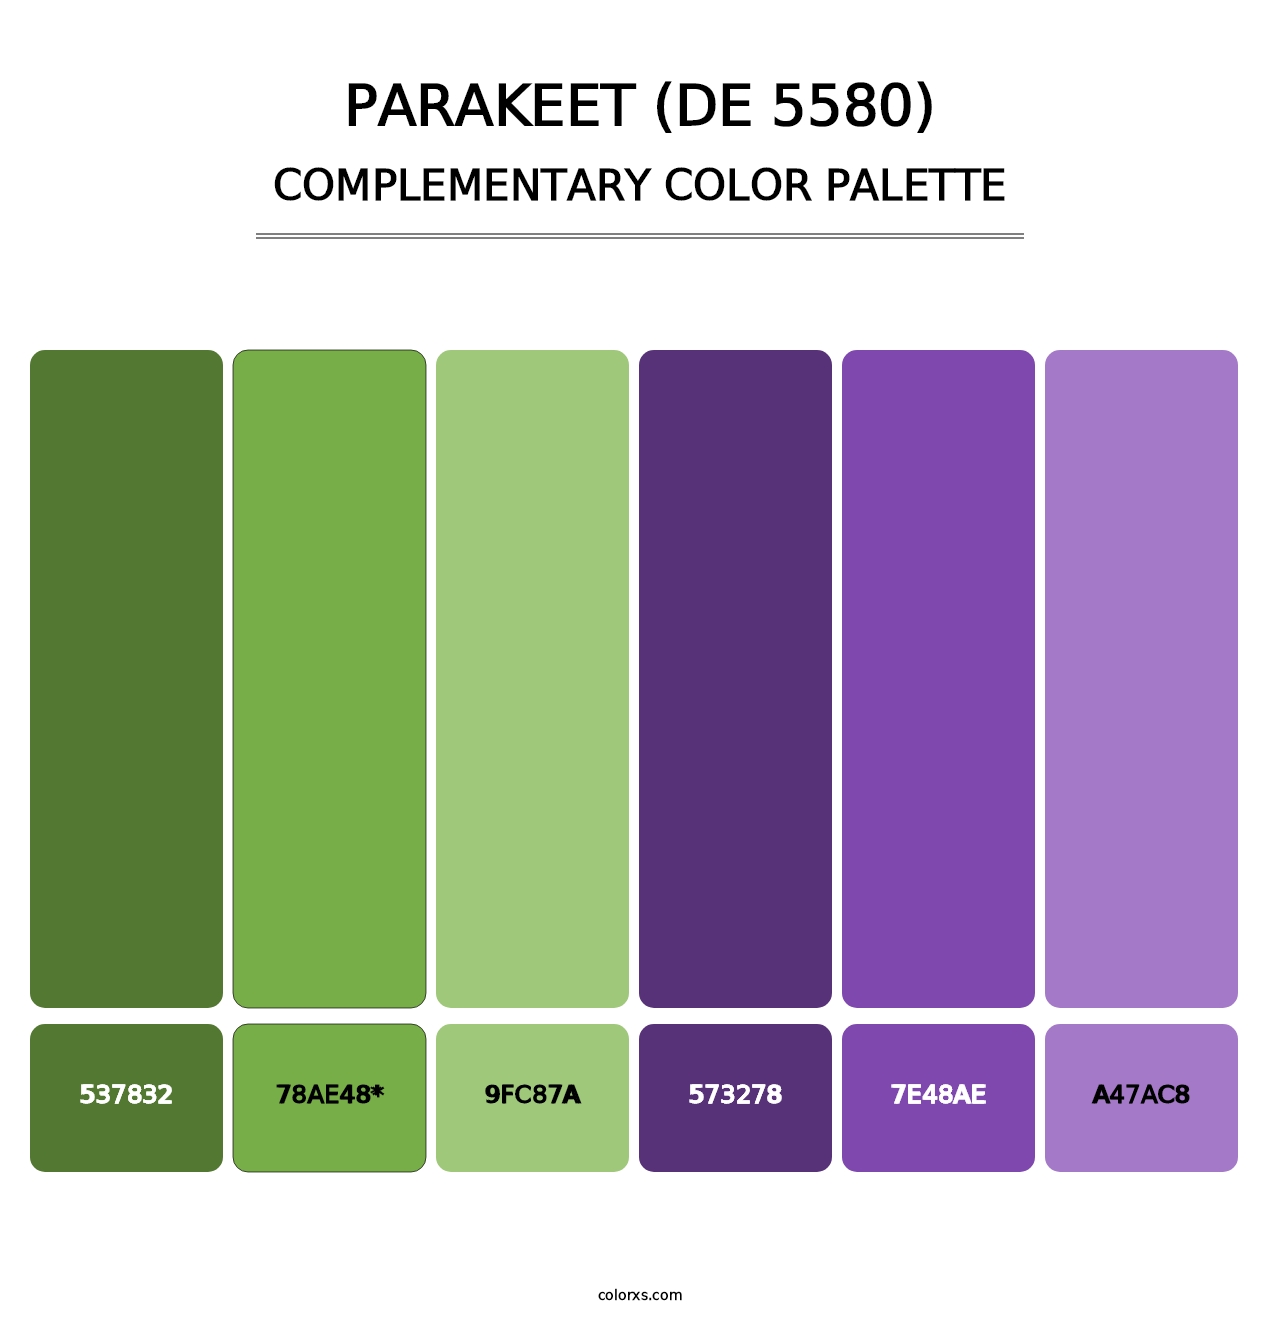 Parakeet (DE 5580) - Complementary Color Palette